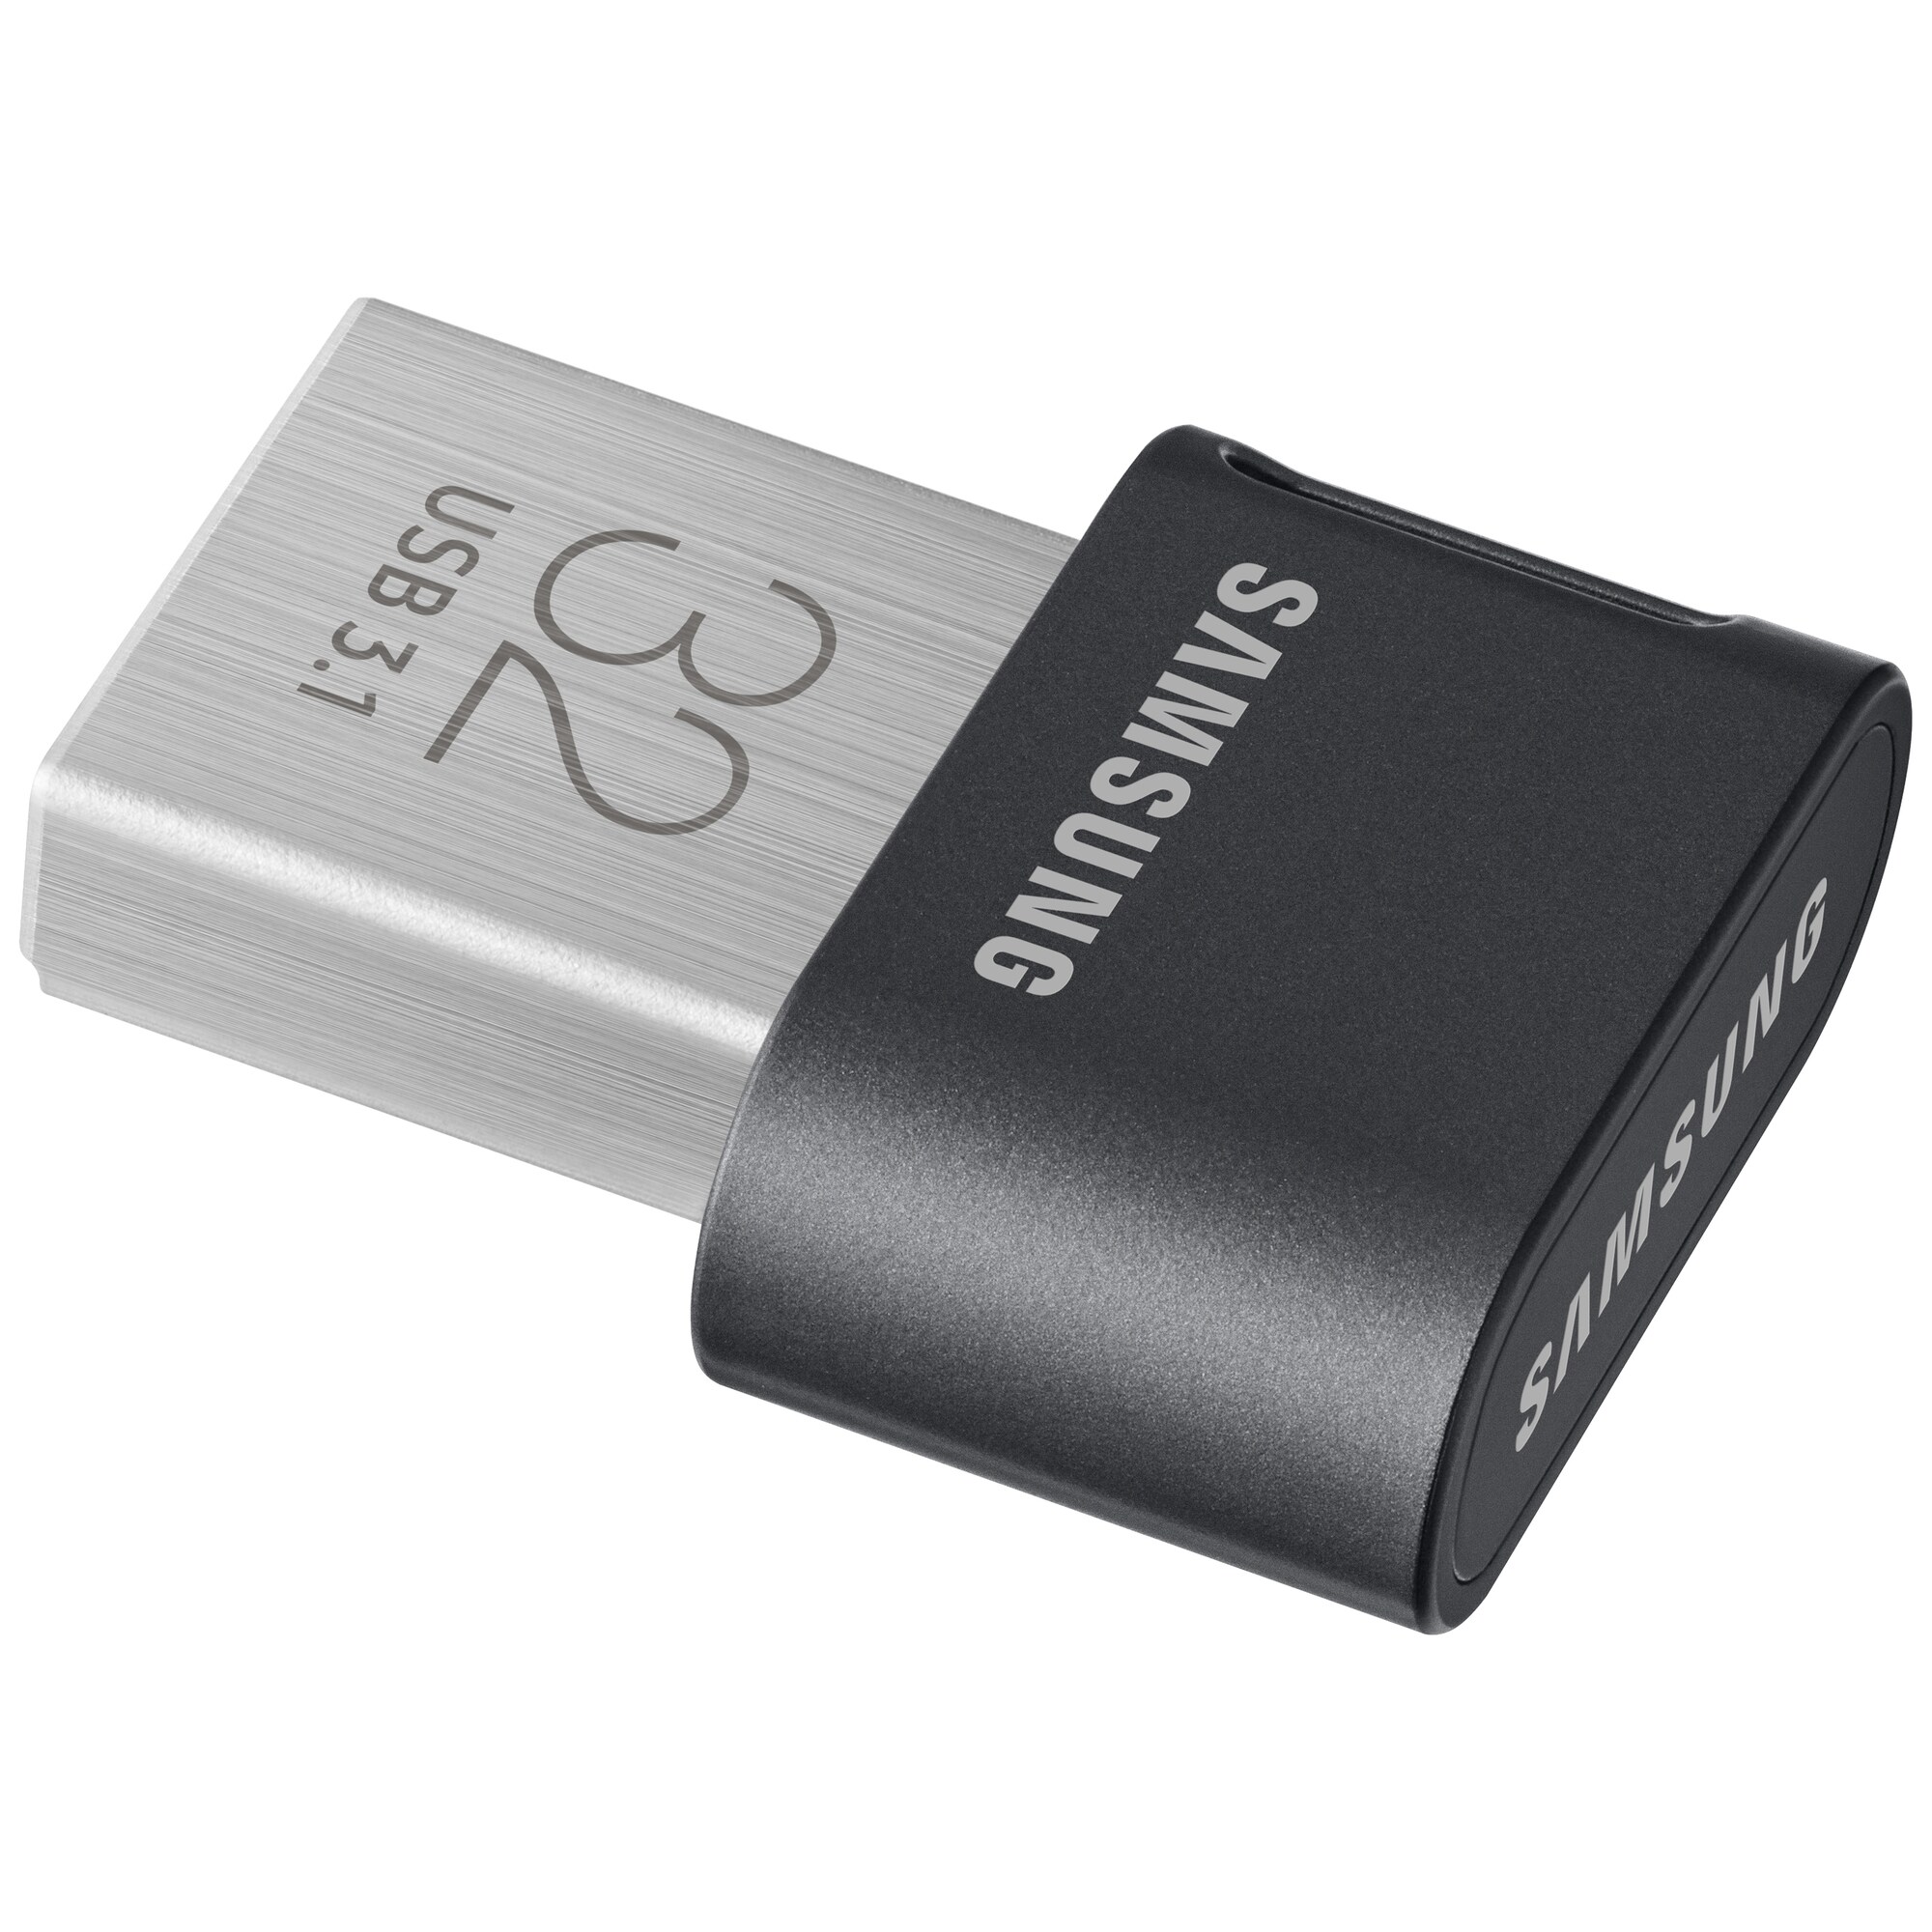 Samsung Fit Plus USB 3.1 minnepenn 32 GB - Minnekort og USB-minne ...